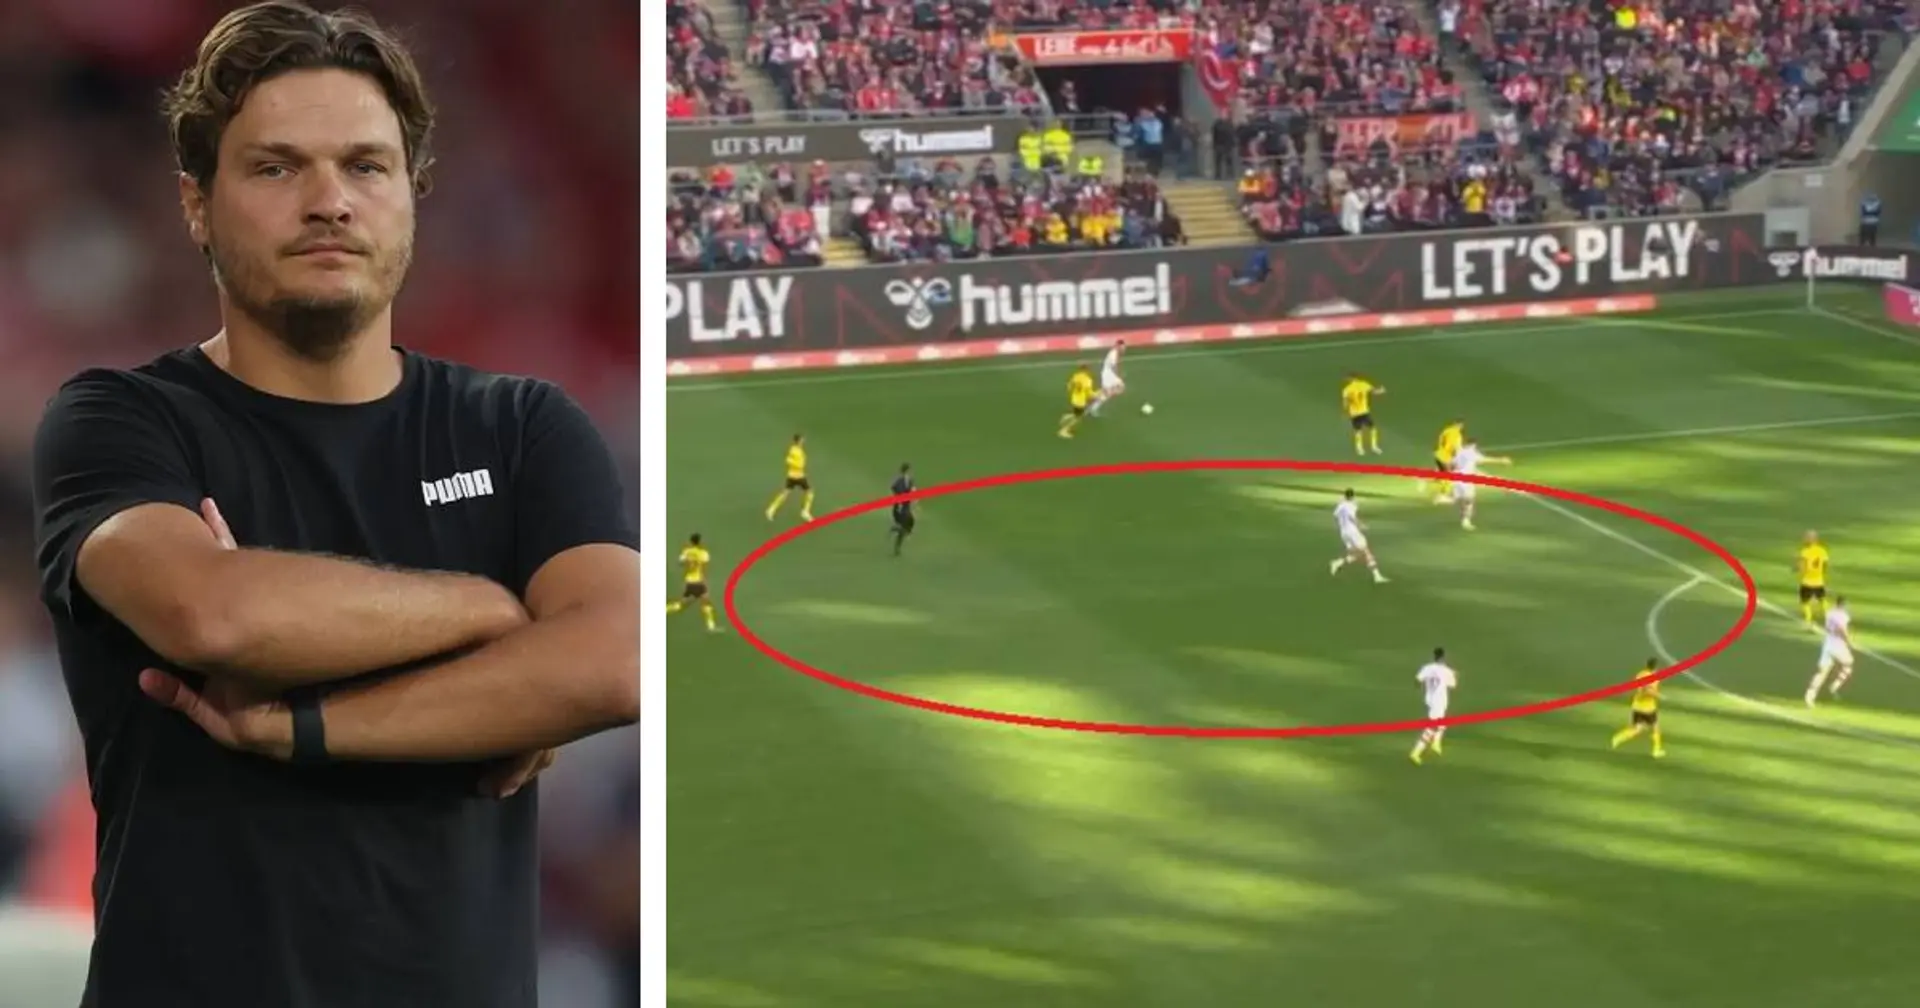 "Wie viel Platz hat Ljubičić vor dem 3:1?": Ein Beweis, dass nicht alle BVB-Spieler mit nach hinten arbeiten